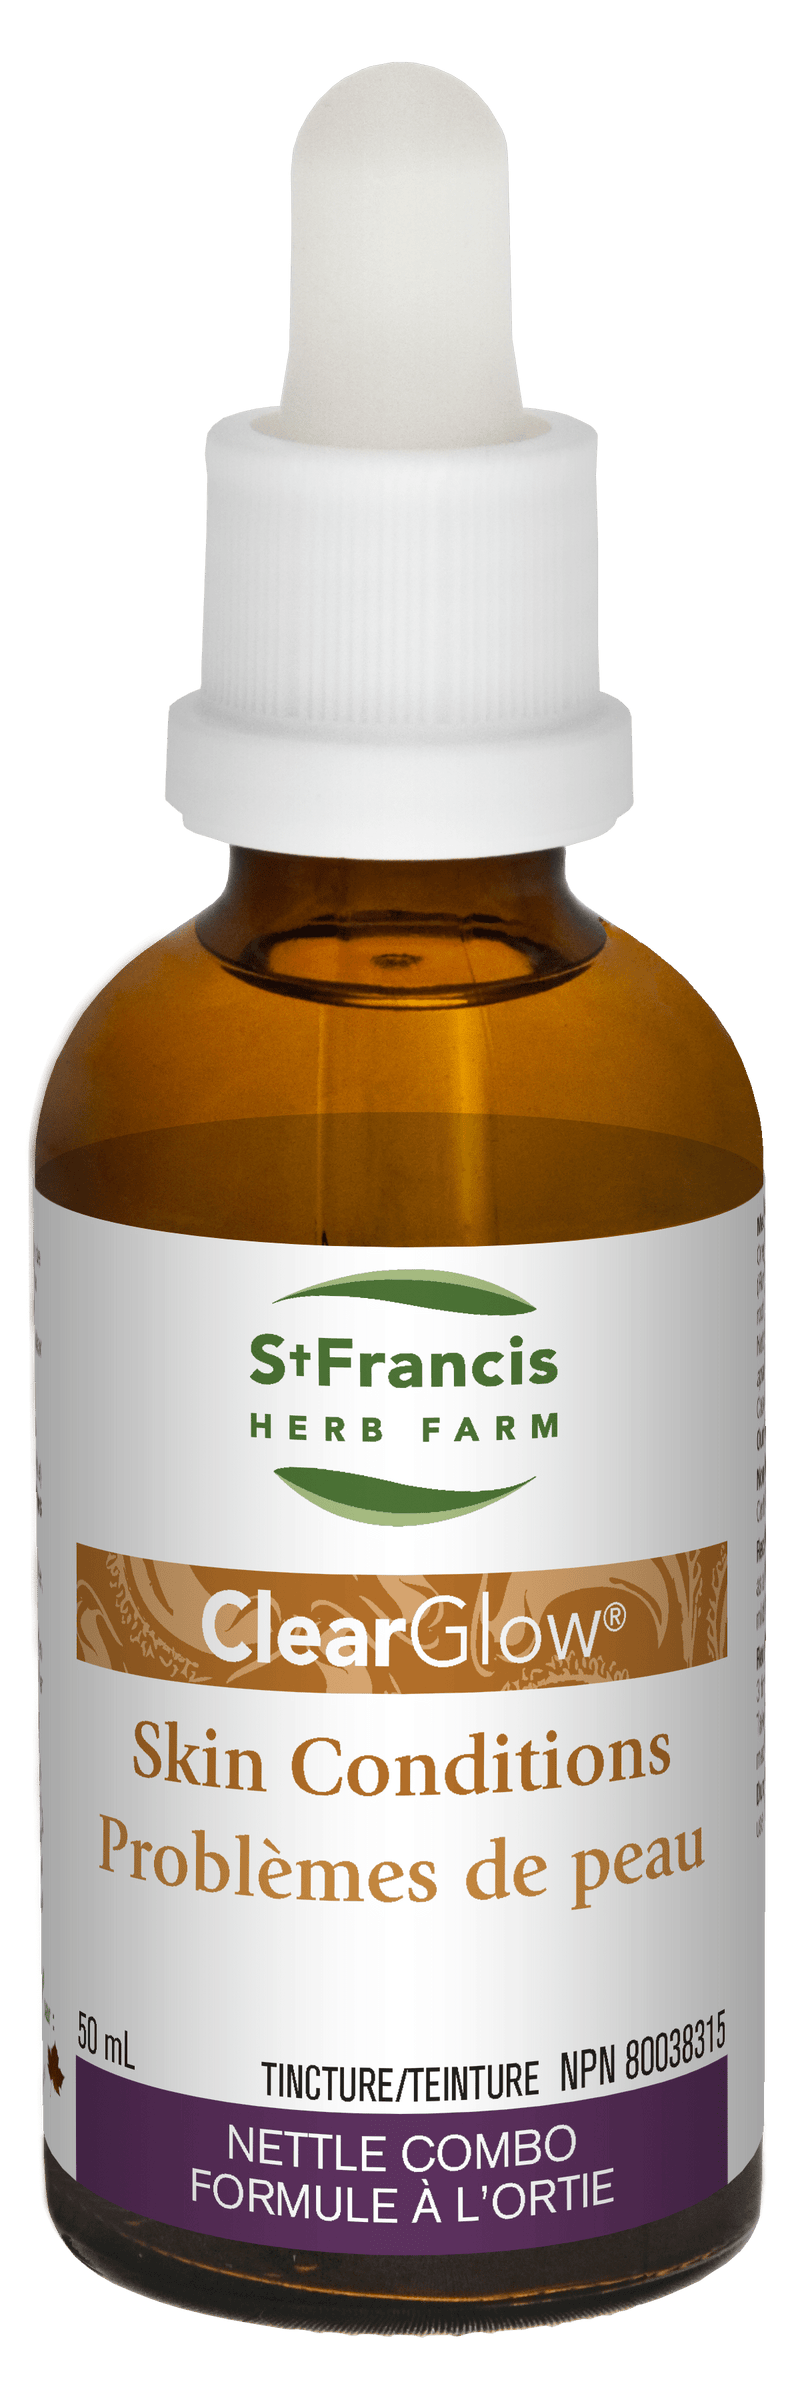 세인트 프랜시스 허브팜 클리어글로우 50 ml